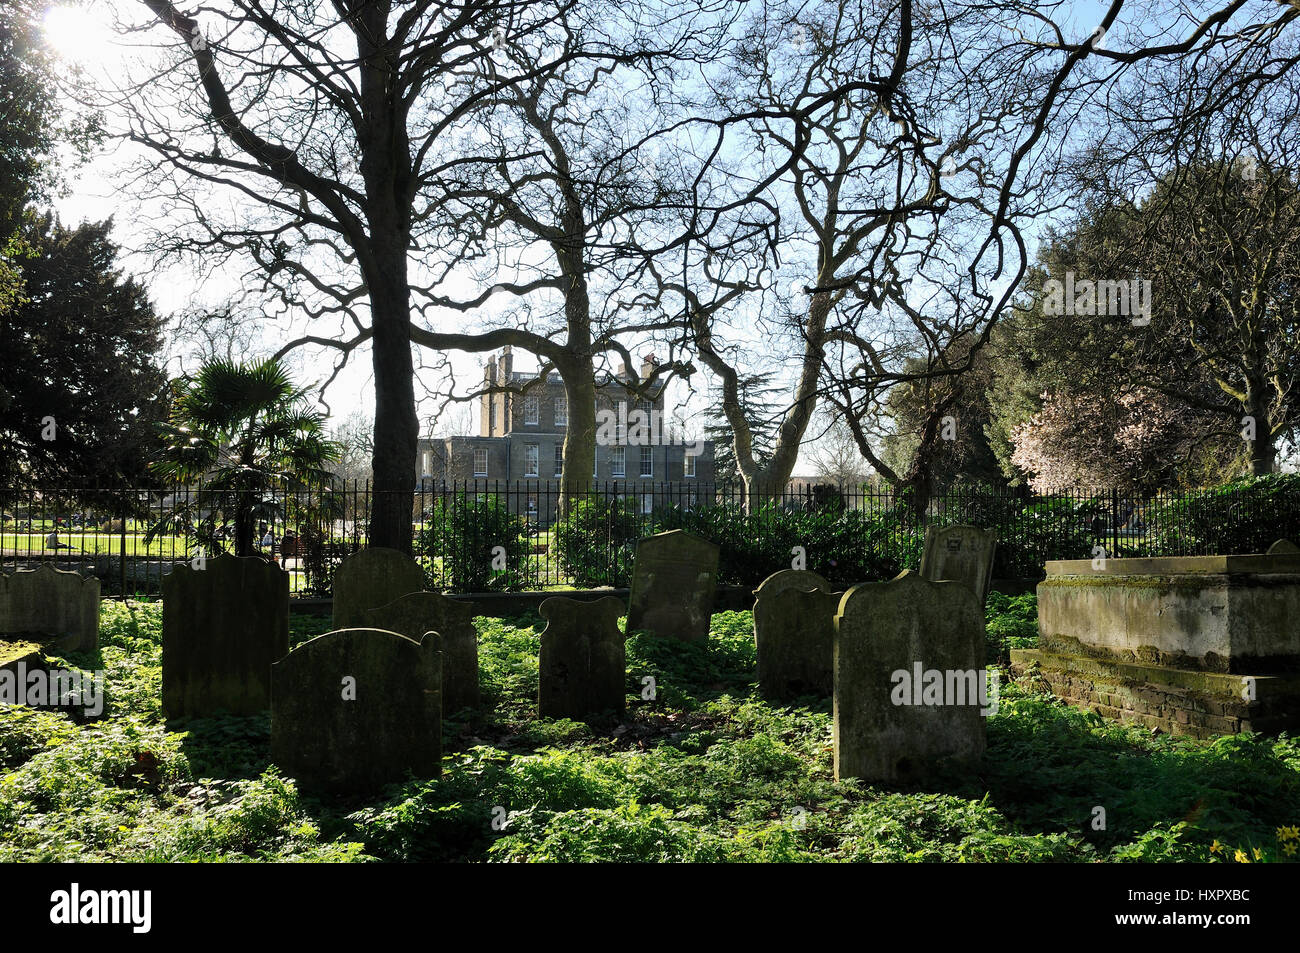 Clissold Park et chambre de St Mary's churchyard London UK Stoke Newington Banque D'Images